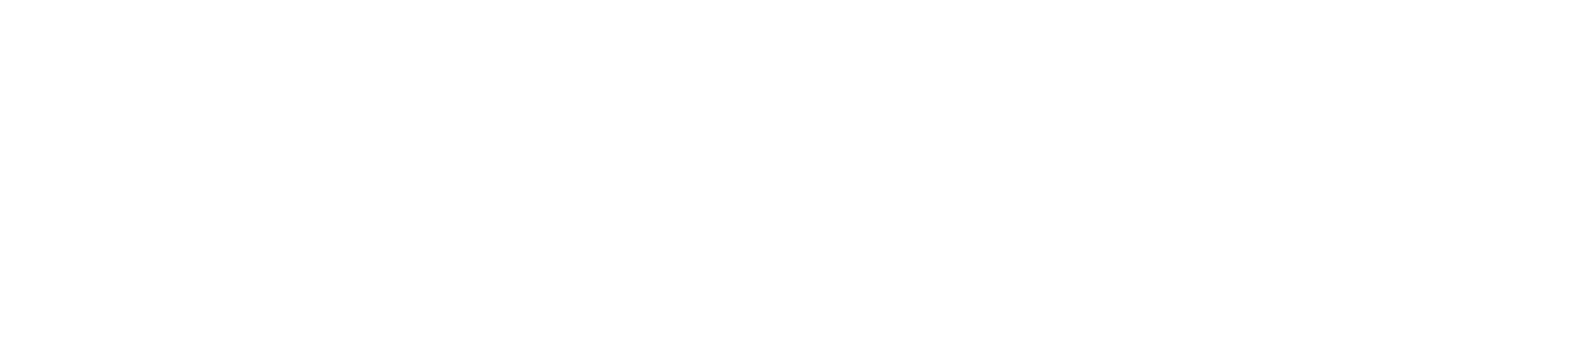 logo-yamaha-home-site-comunnica-off